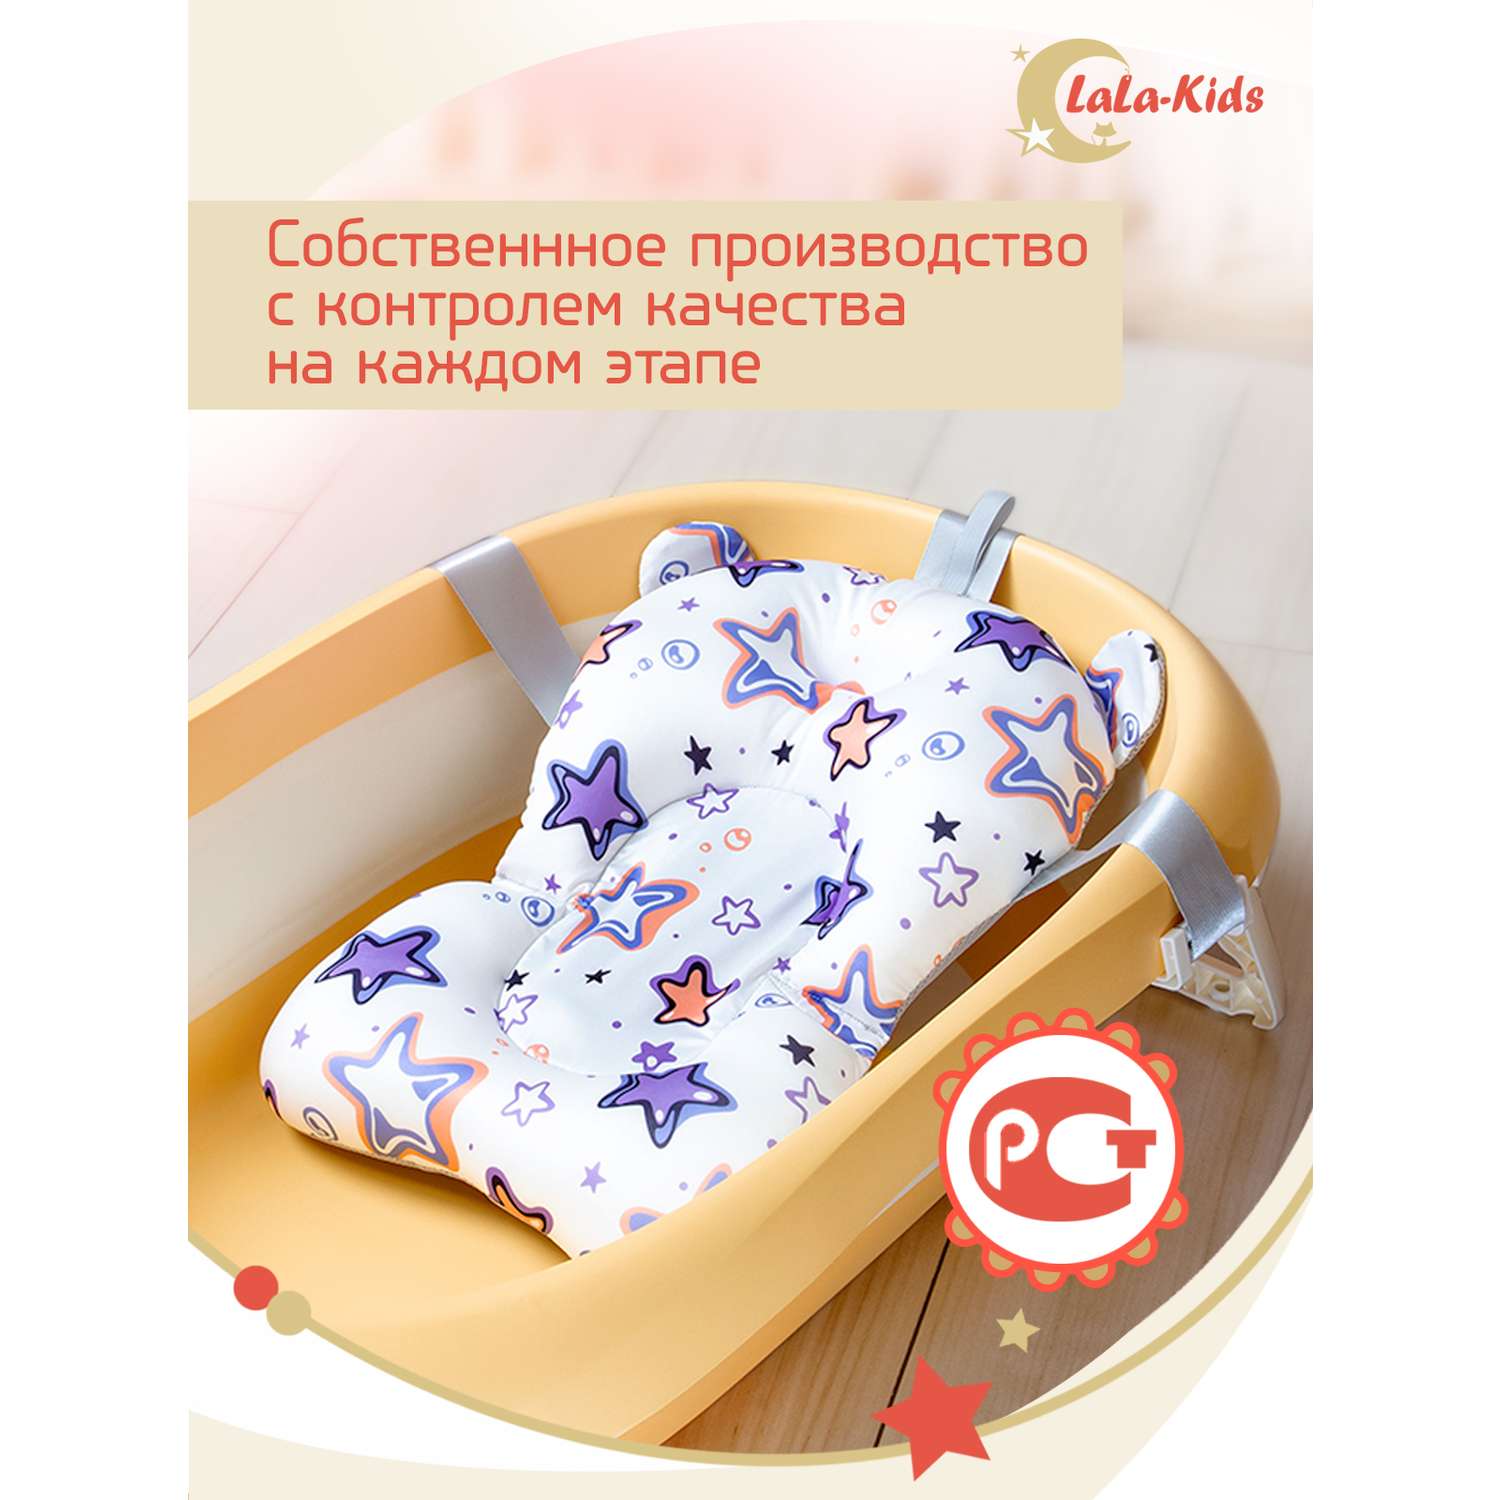 Складная ванночка LaLa-Kids для купания новорожденных с матрасиком в комплекте - фото 18